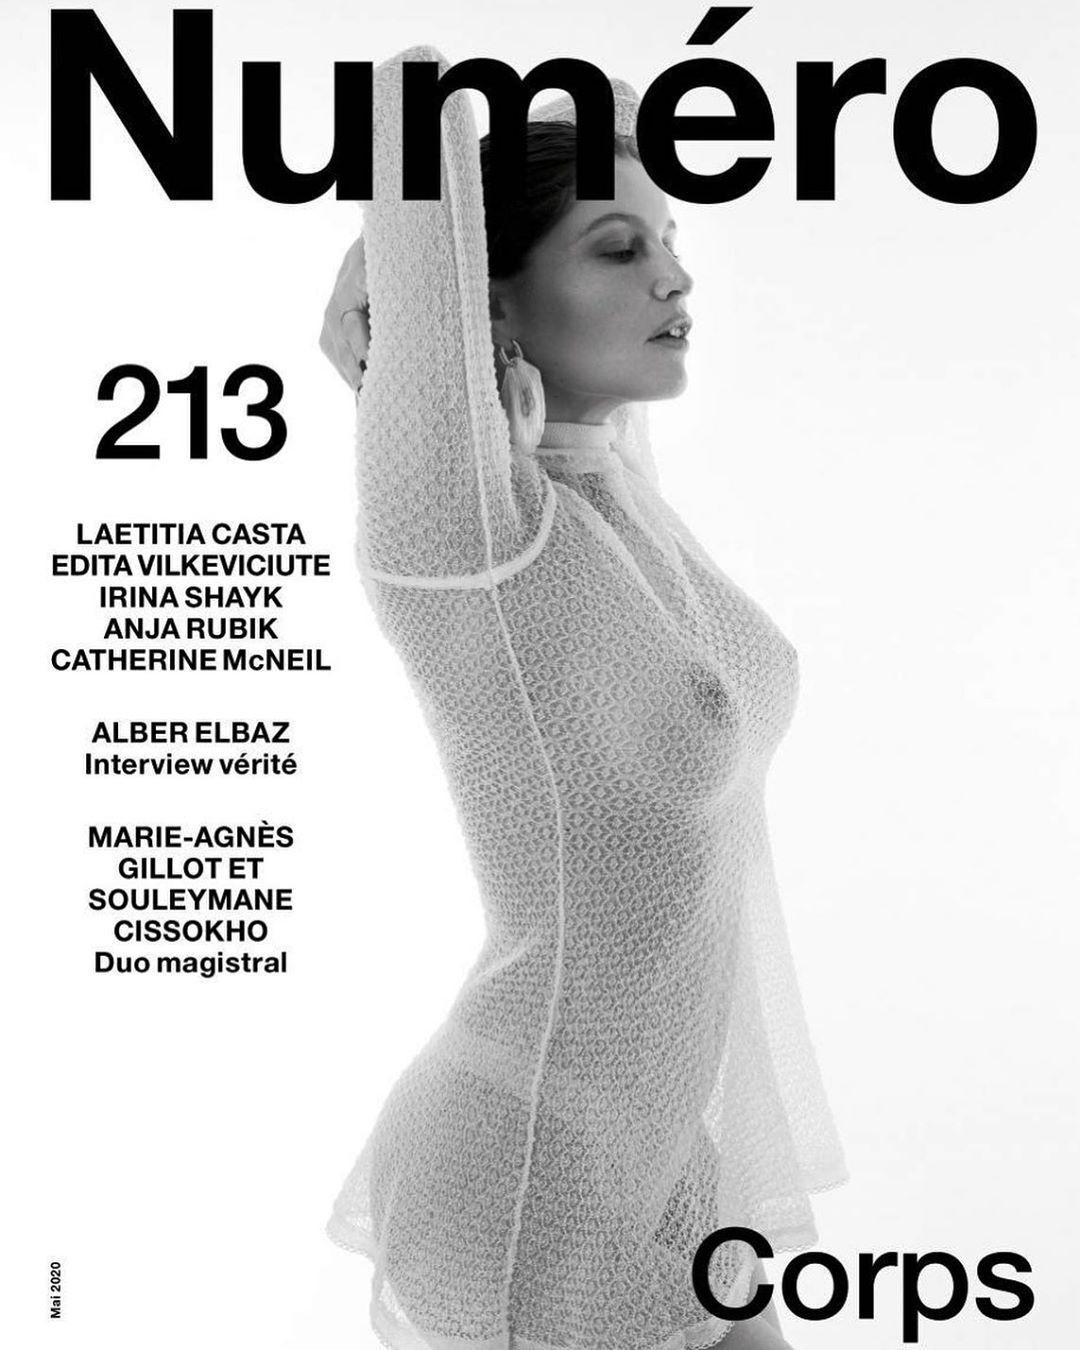 Laetitia Casta Nude Sexy Numéro fappenings.com 2